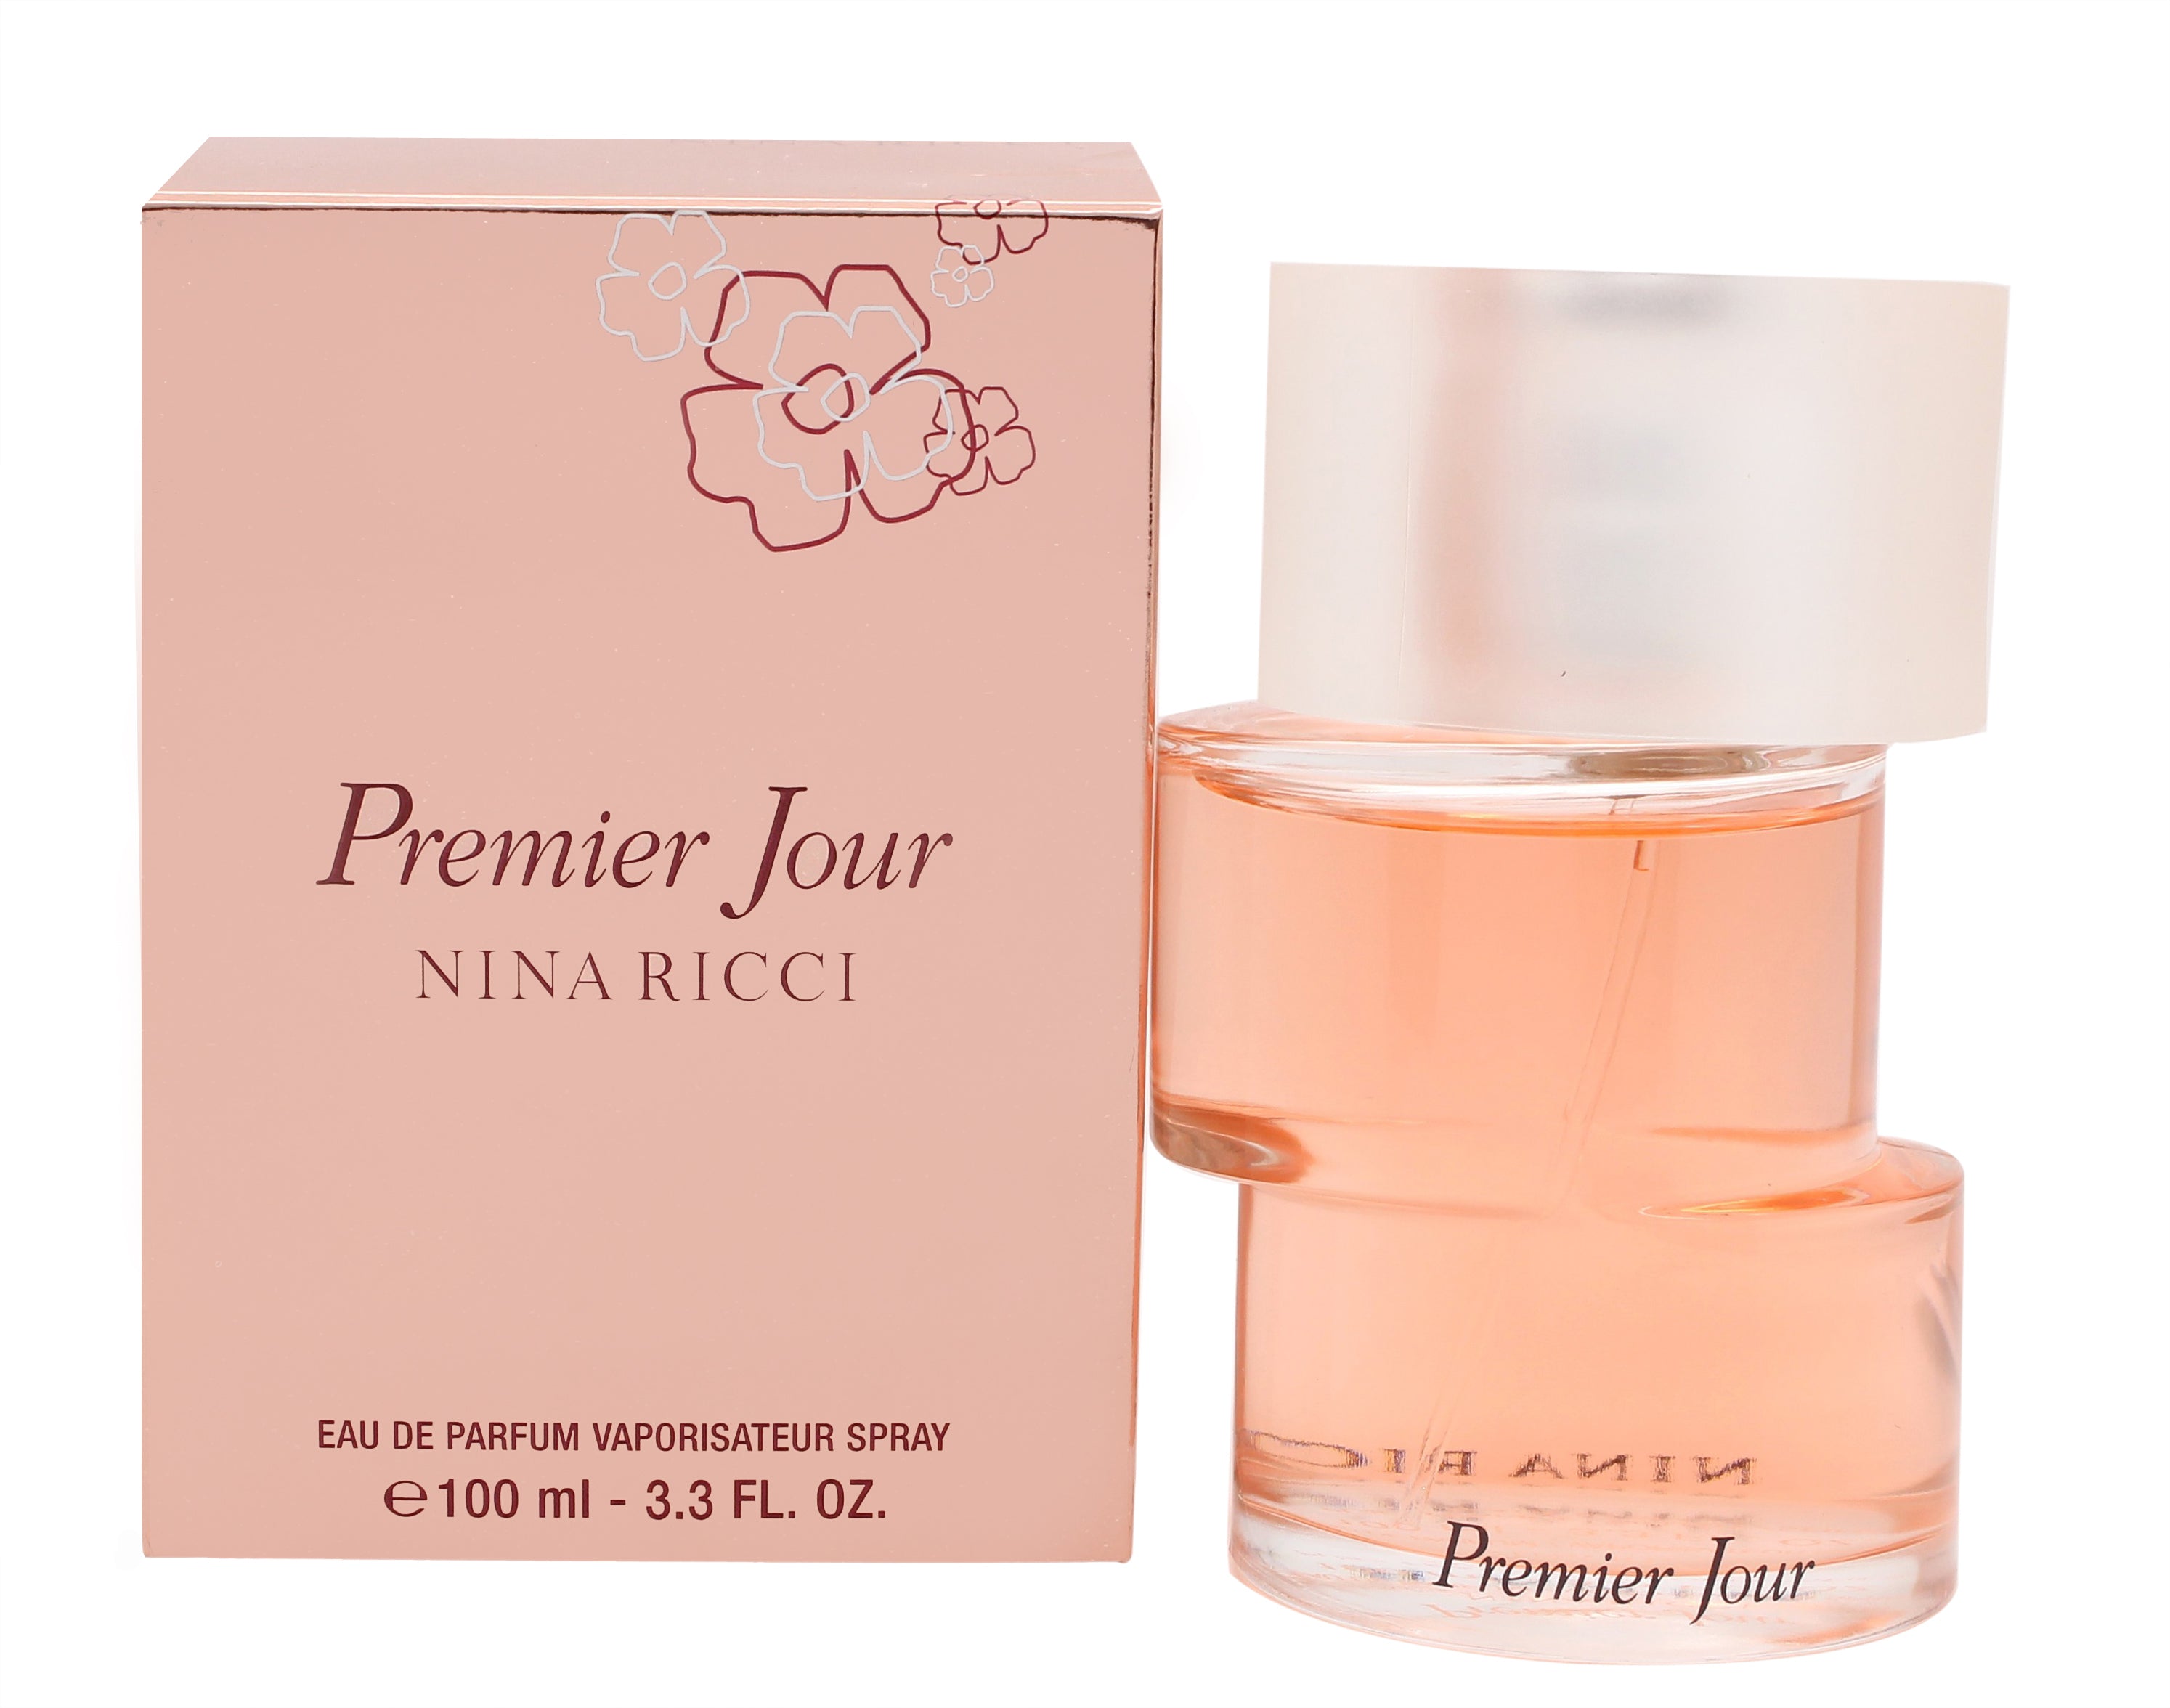 View Nina Ricci Premier Jour Eau de Parfum 100ml Spray information